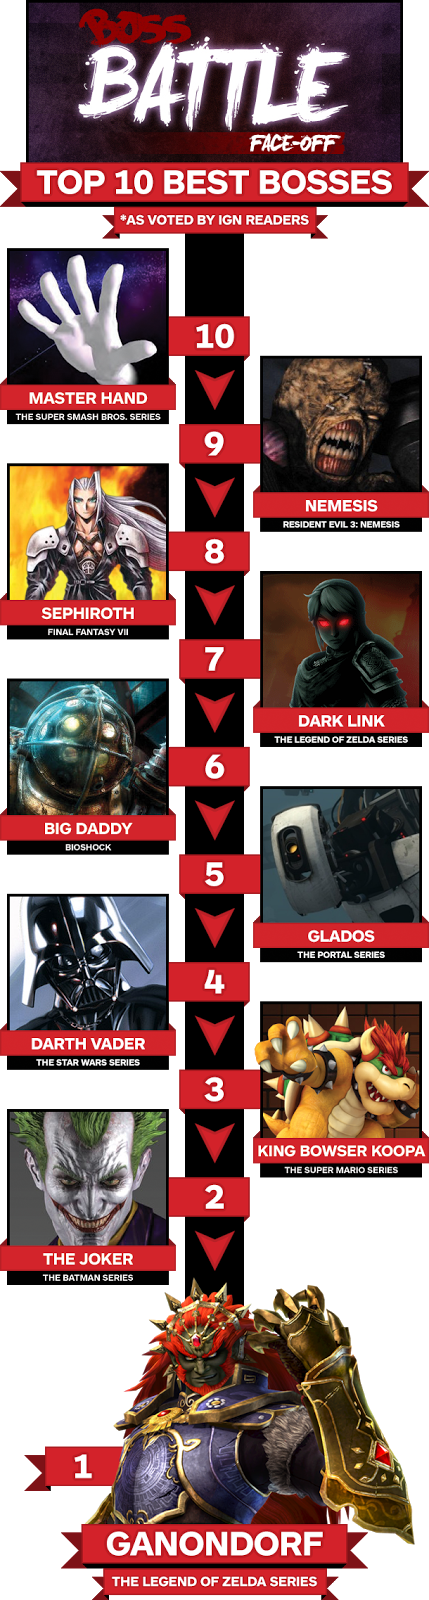 Ganondorf é eleito o melhor vilão de todos os tempos, junto com outros vilões da Nintendo pelos leitores da IGN Top-10-best-bosses-infographic